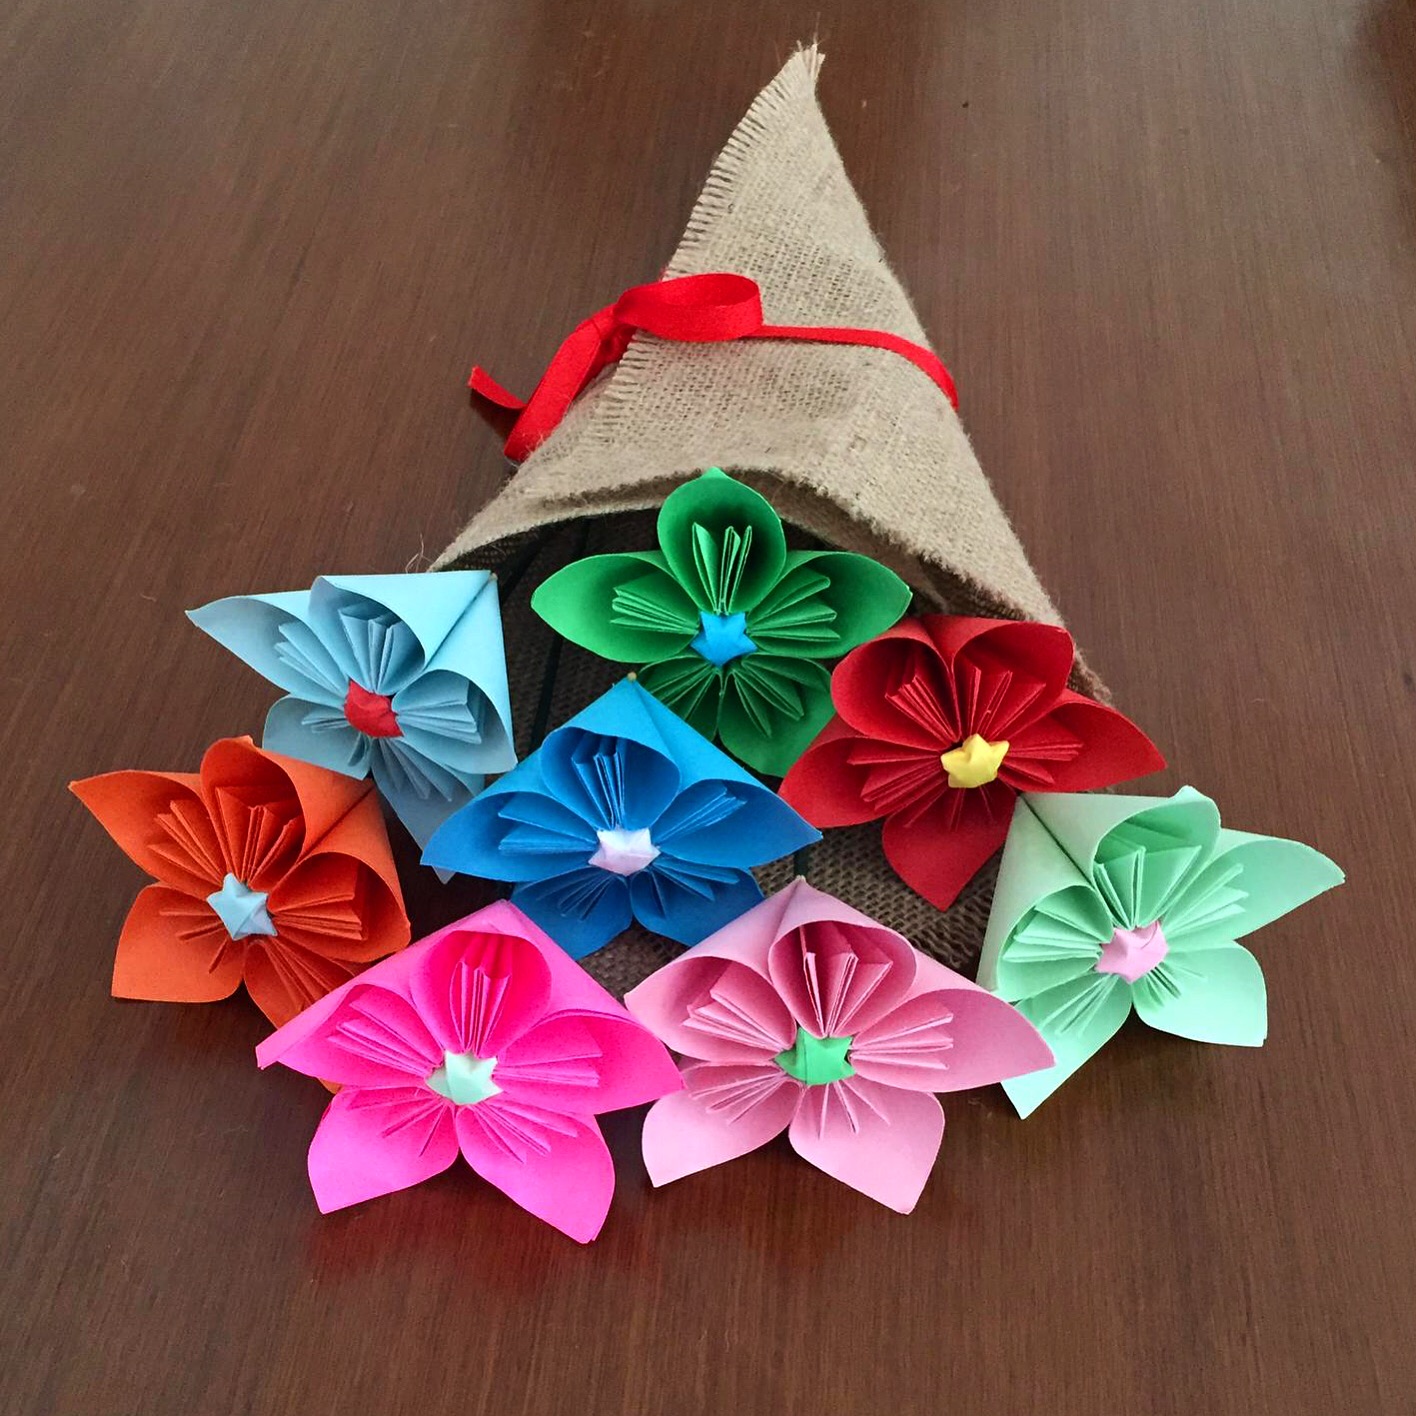 Кусудама колокольчик. Кусудами оригами колокольчик. Цветы из бумаги кусудама колокольчик. Оригами колокольчик и кусудами видеоролик.